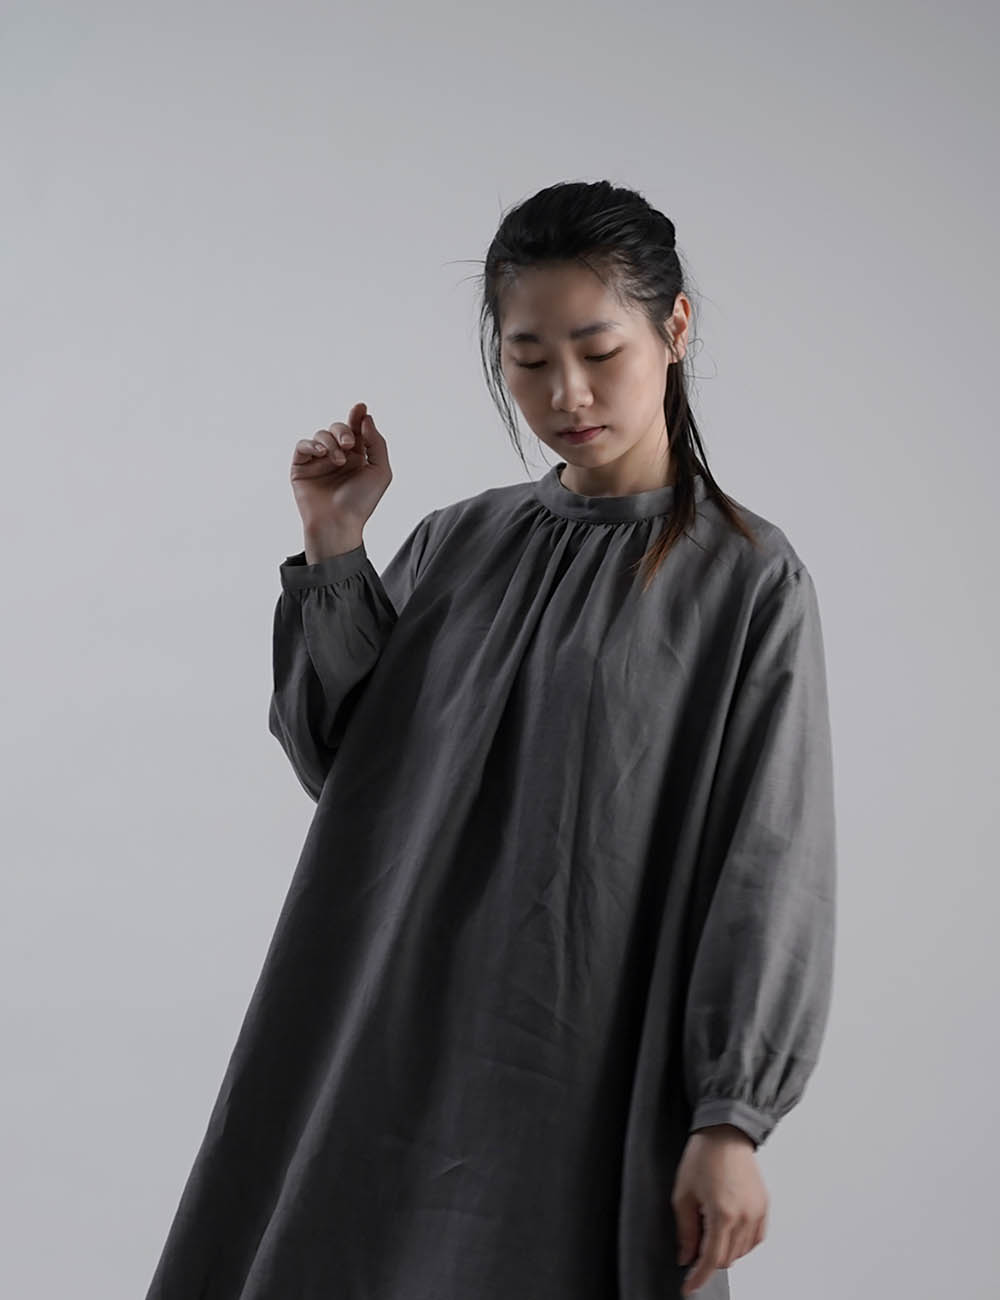 【wafu】Linen Dress  あきすぎないネック のラウンドテールドレス  /鈍色(にびいろ)【free】a034a-nib1